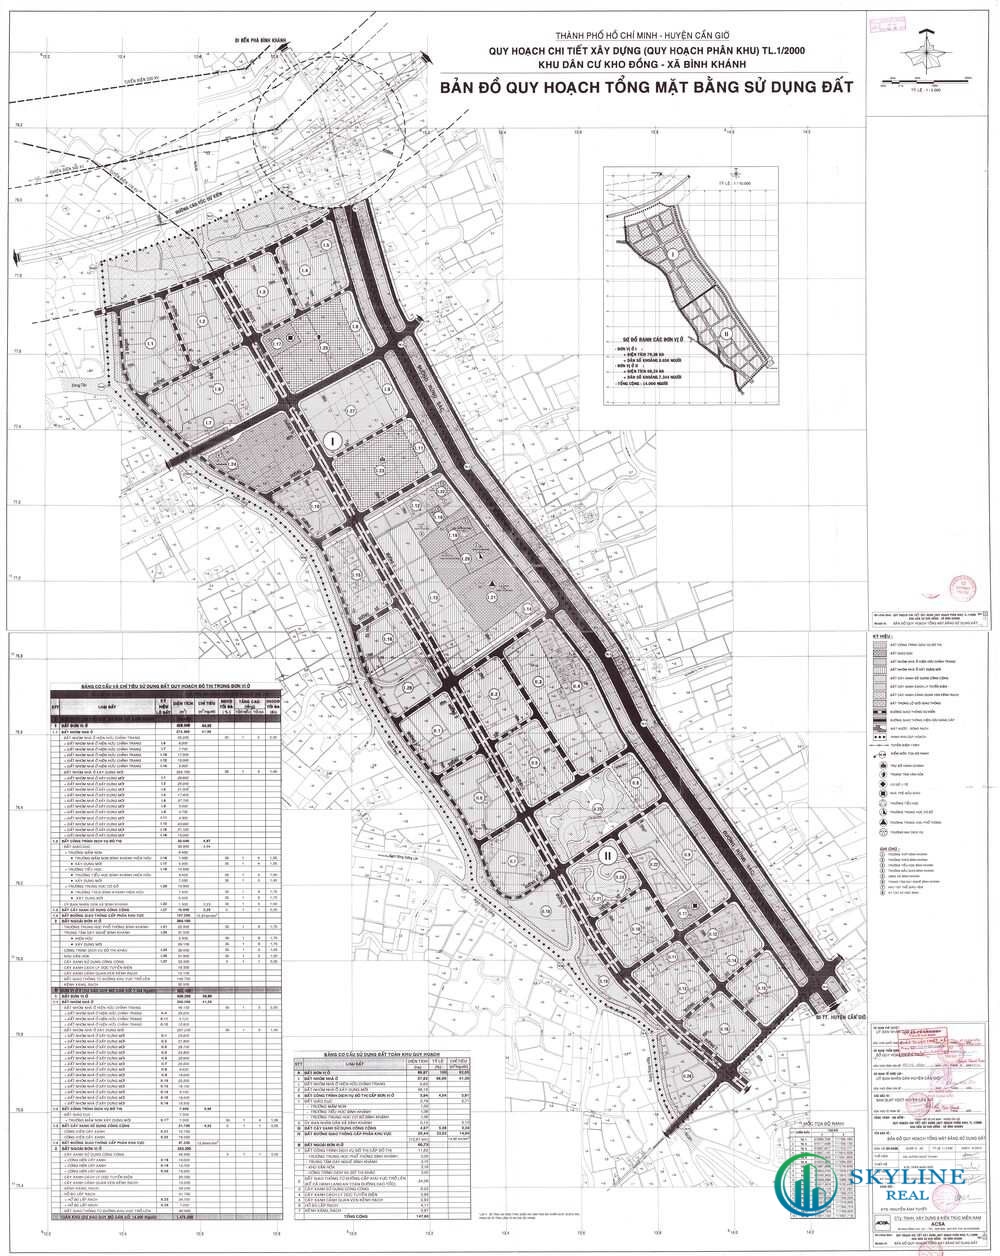 Bản đồ quy hoạch 1/2000 Khu dân cư Kho Đồng, Huyện Cần Giờ​​​​​​​